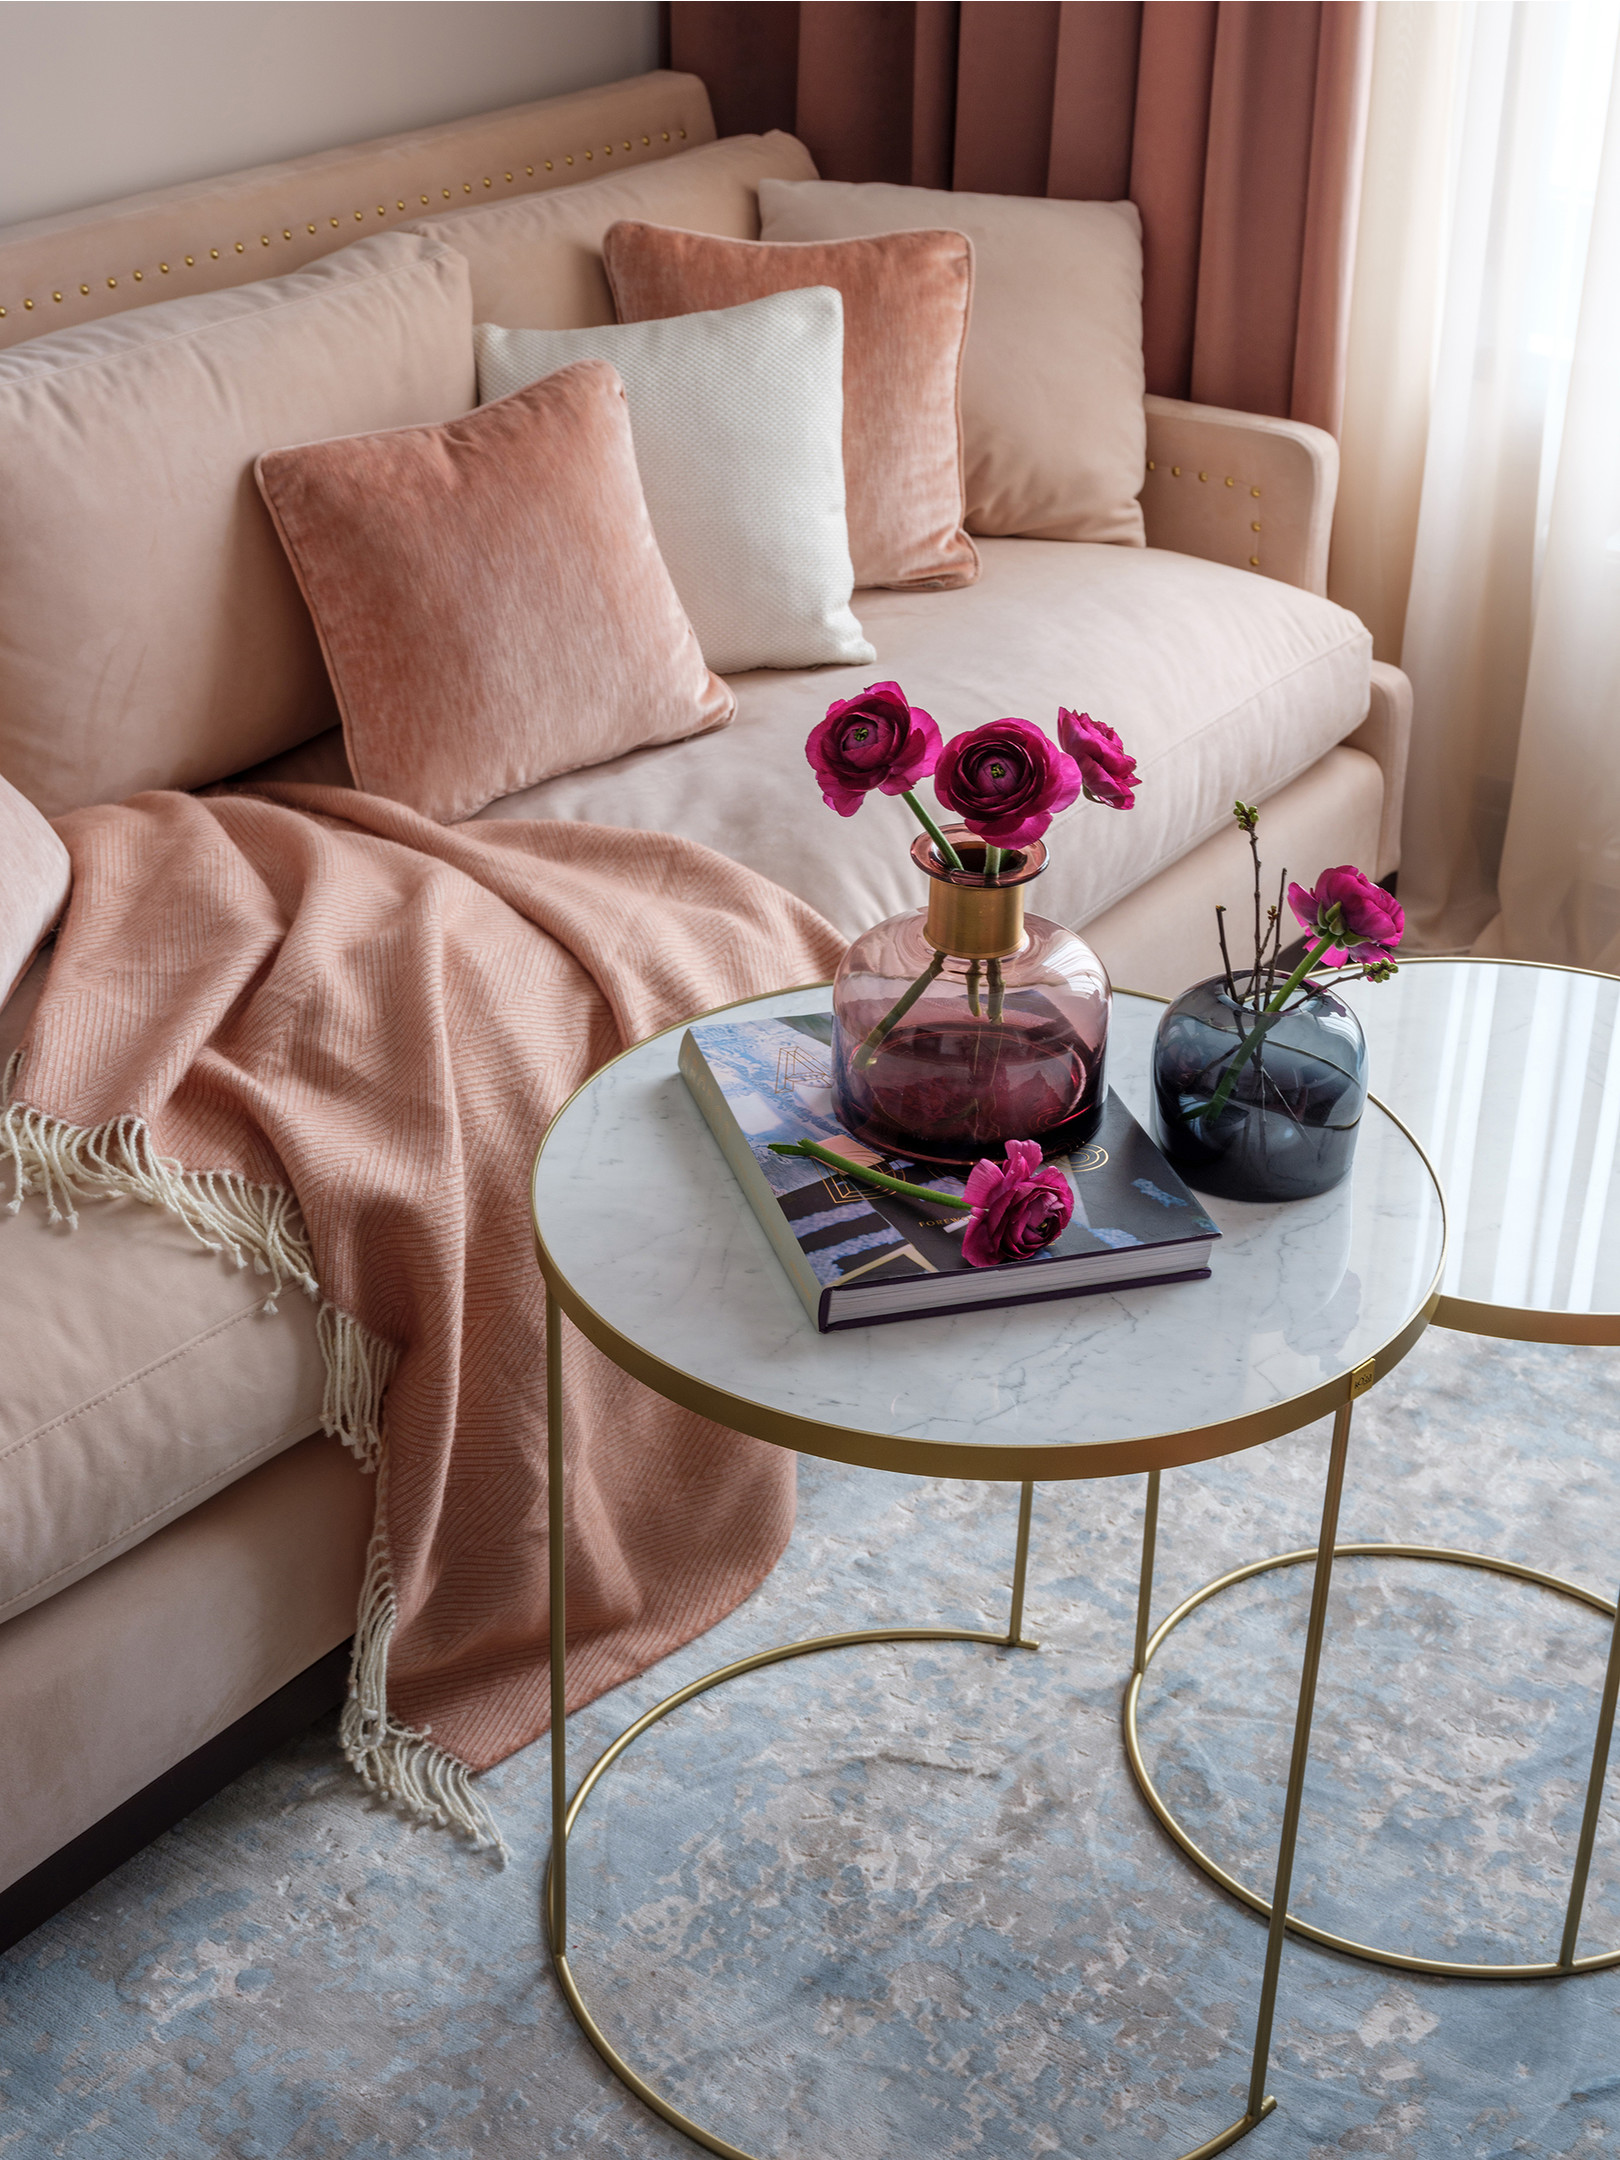 Những bông hoa màu hồng tím giúp bàn nước trở nên nổi bật nhưng không hề lạc điệu giữa những gam màu hồng phấn chủ đạo trong phòng khách.